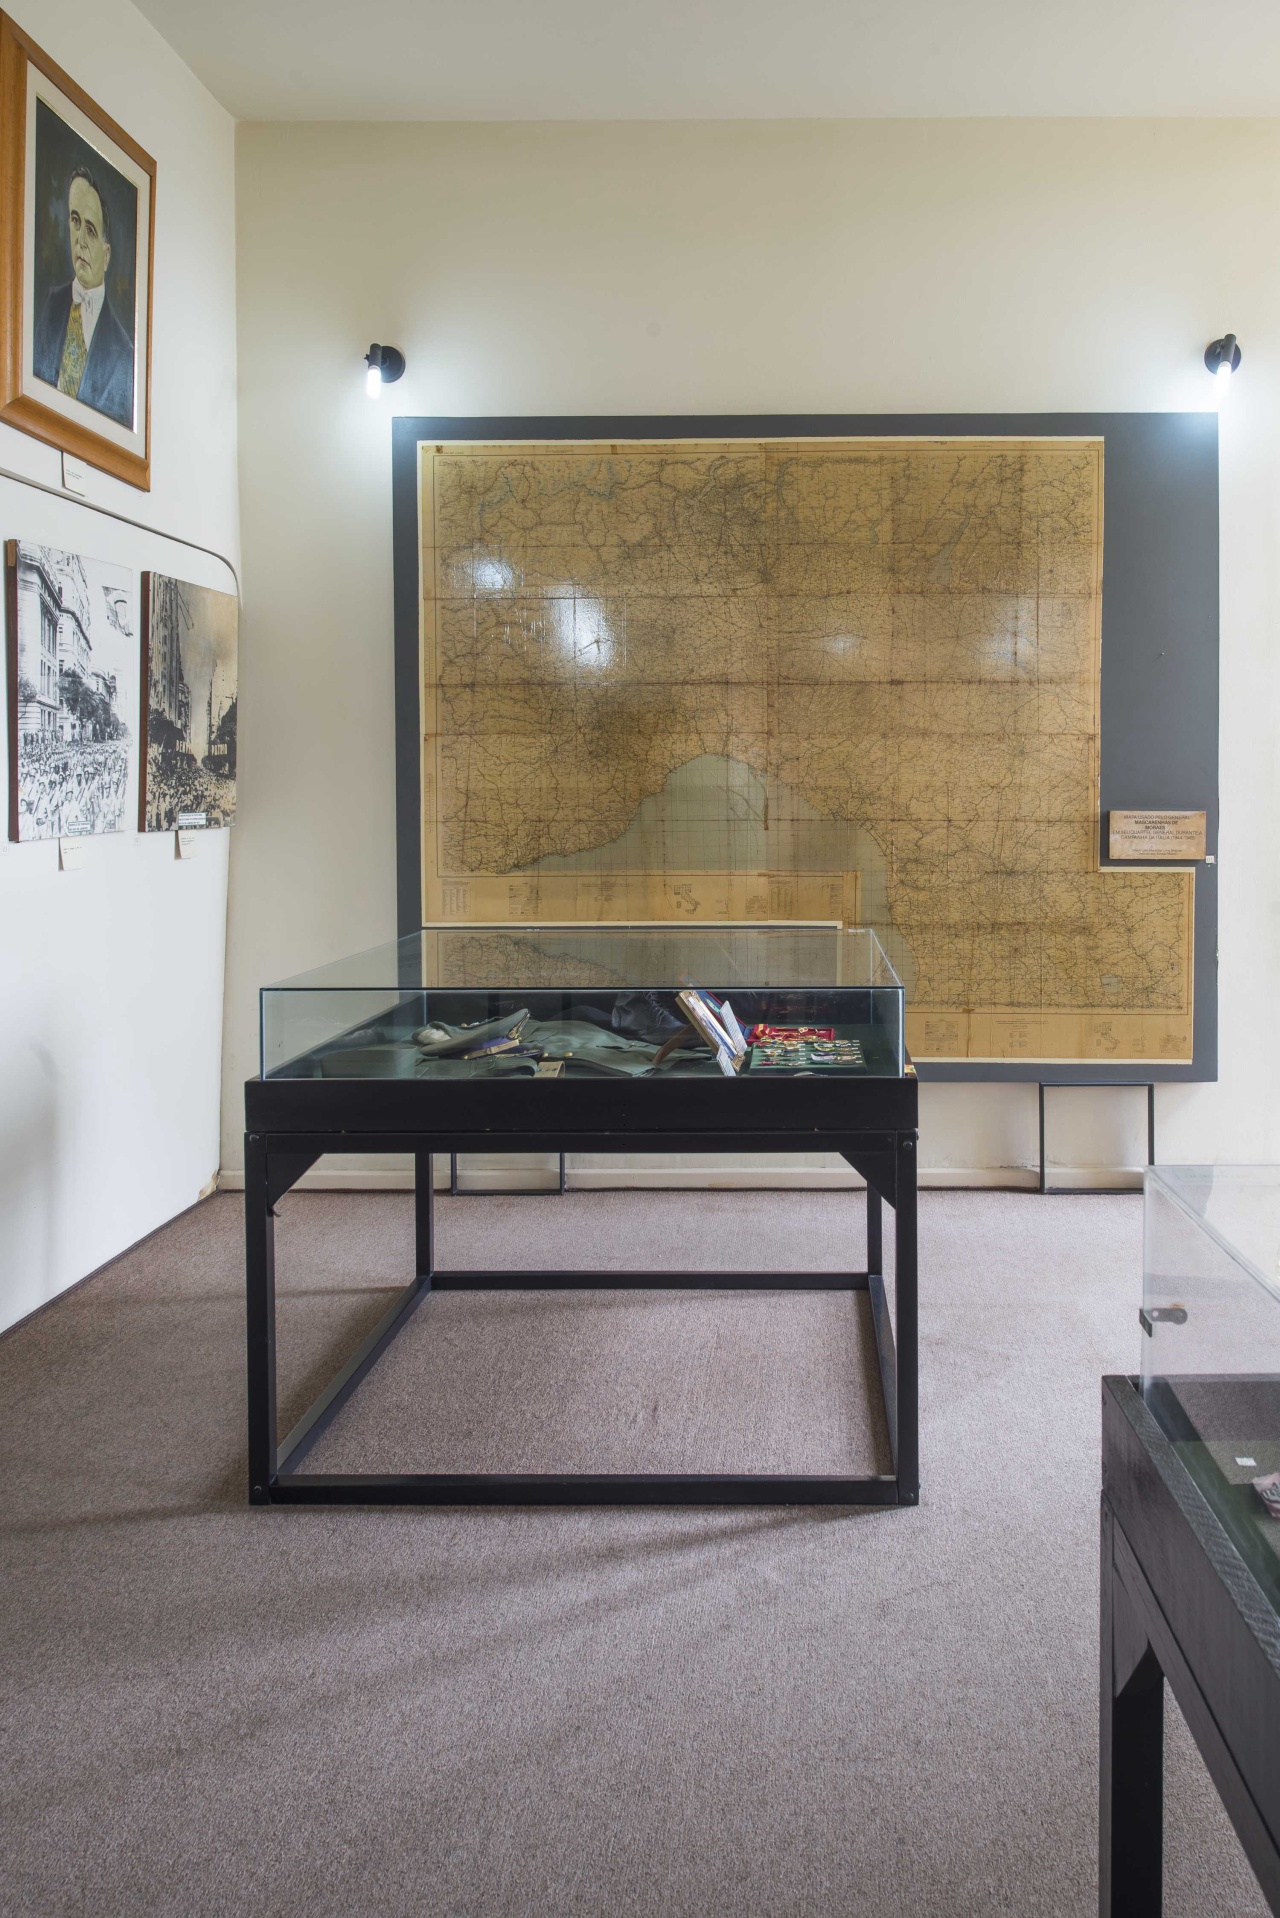 Entre as muitas peças do acervo está o mapa utilizado pelo General Mascarenhas de Morais durante a operação da FEB na Itália (Letícia Akemi/Gazeta do Povo)